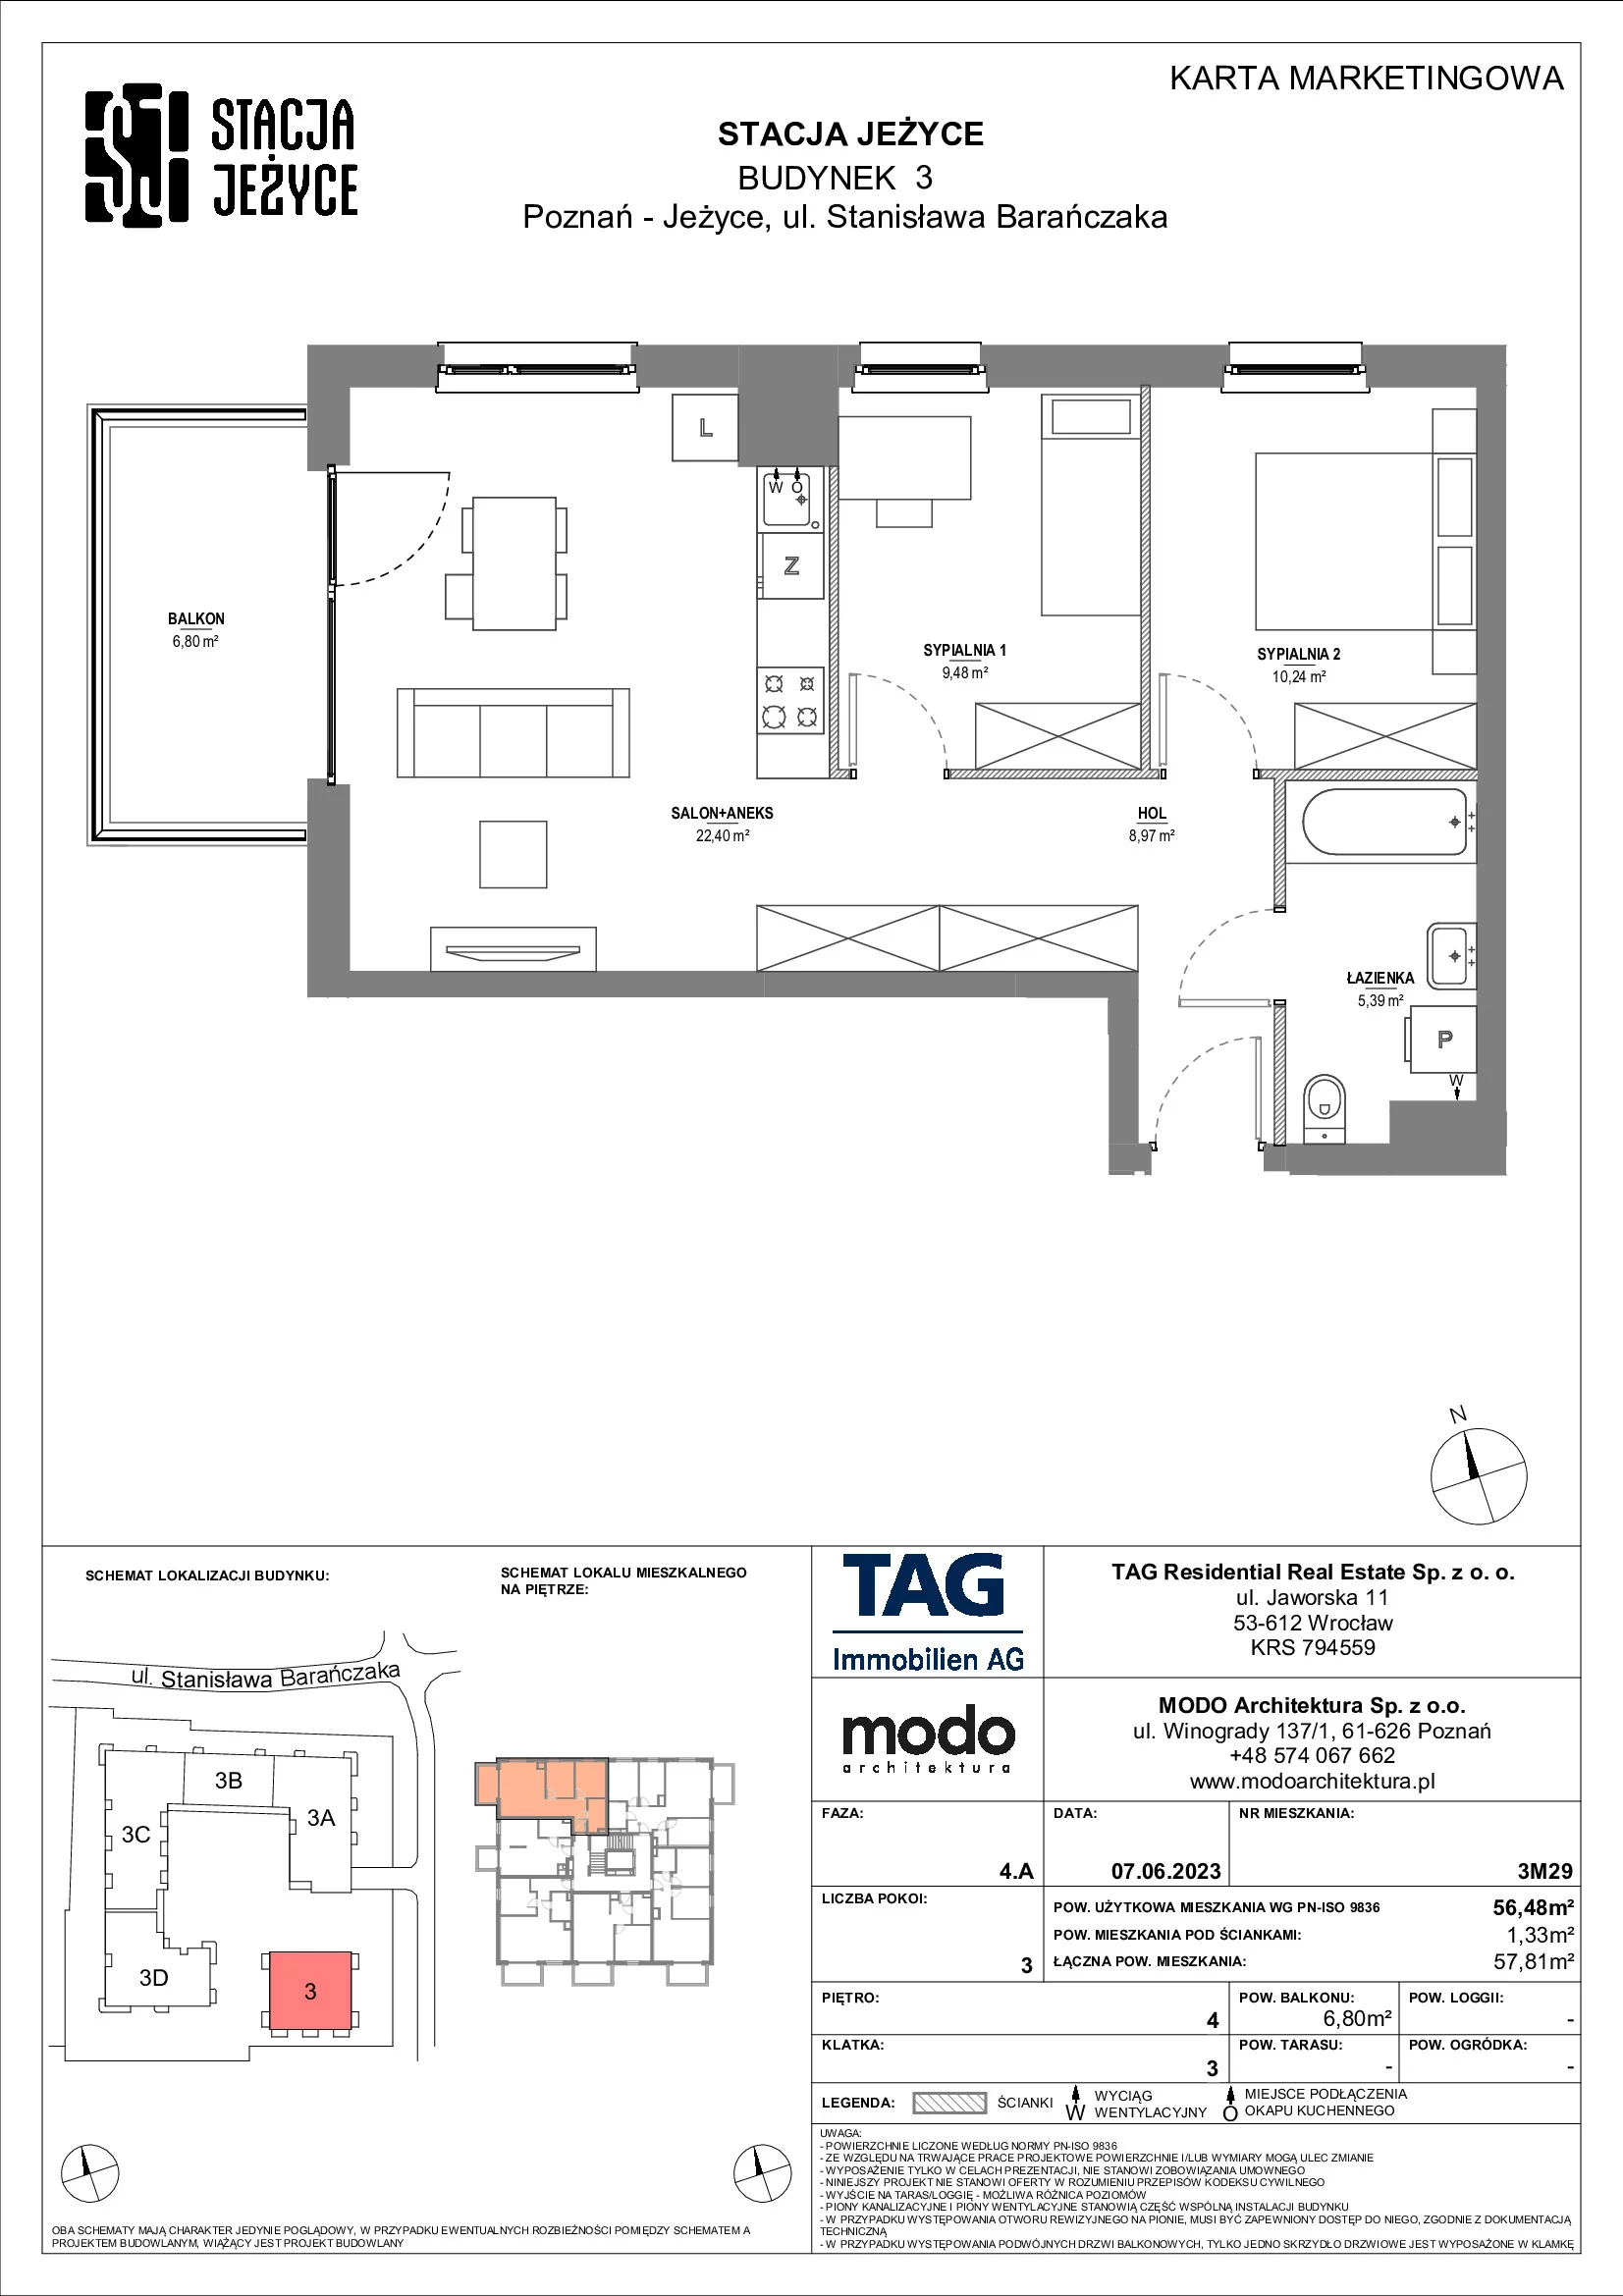 Mieszkanie 56,48 m², piętro 4, oferta nr 3M29, Stacja Jeżyce, Poznań, Jeżyce, Jeżyce, ul. Stanisława Barańczaka 3